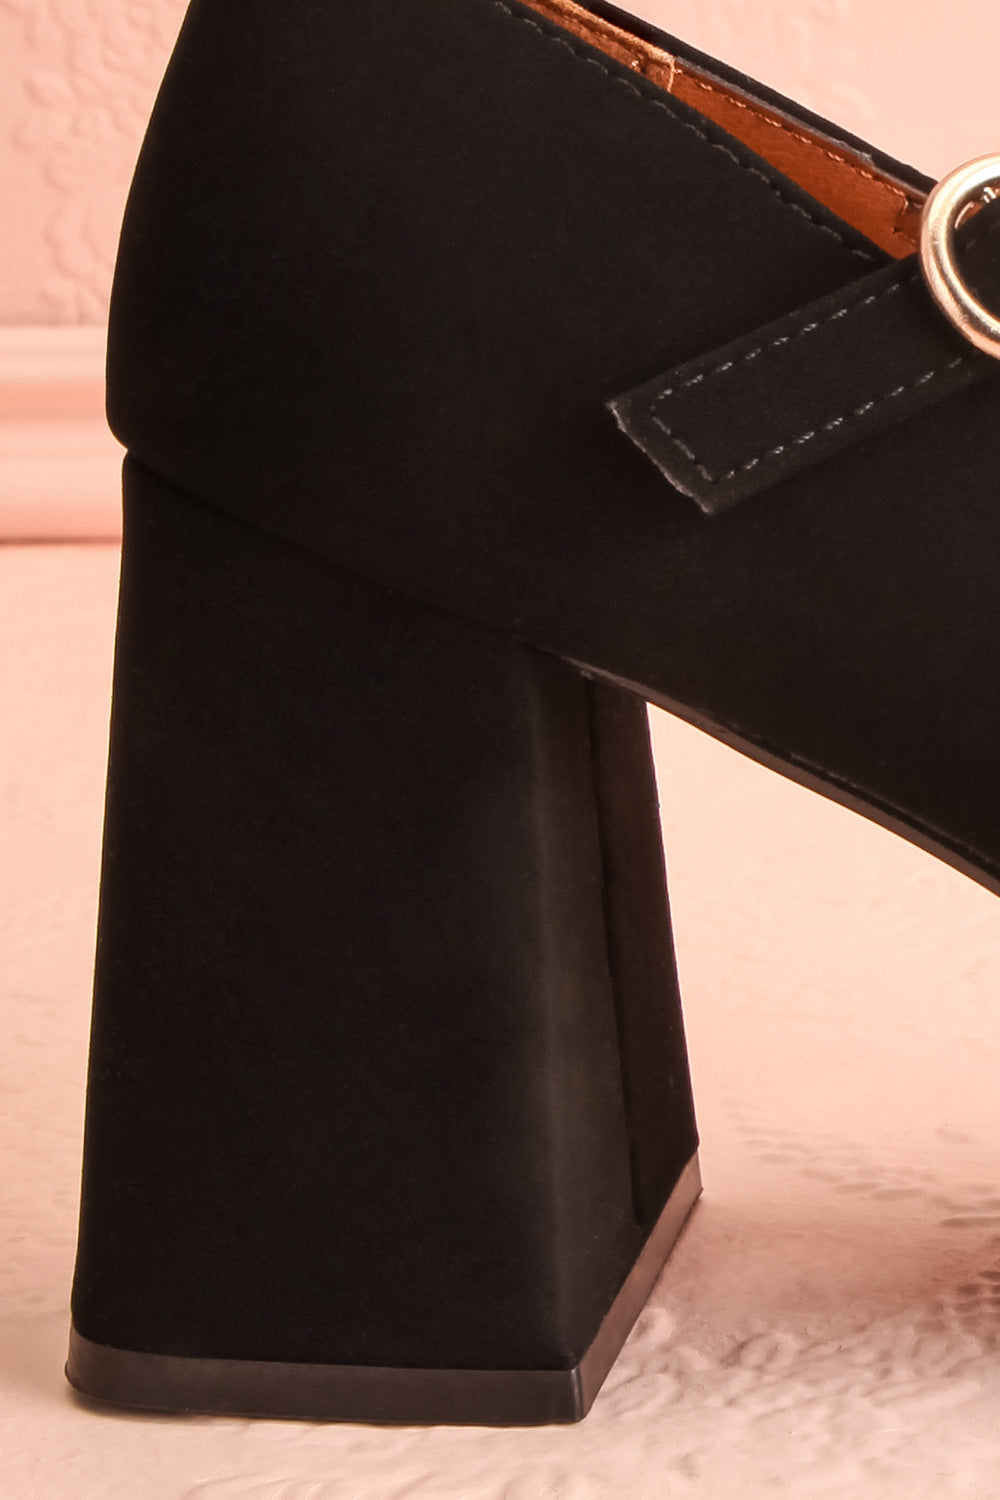 Grand Ecart Mary Jane Platform Heels | Boutique 1861 side back close-up